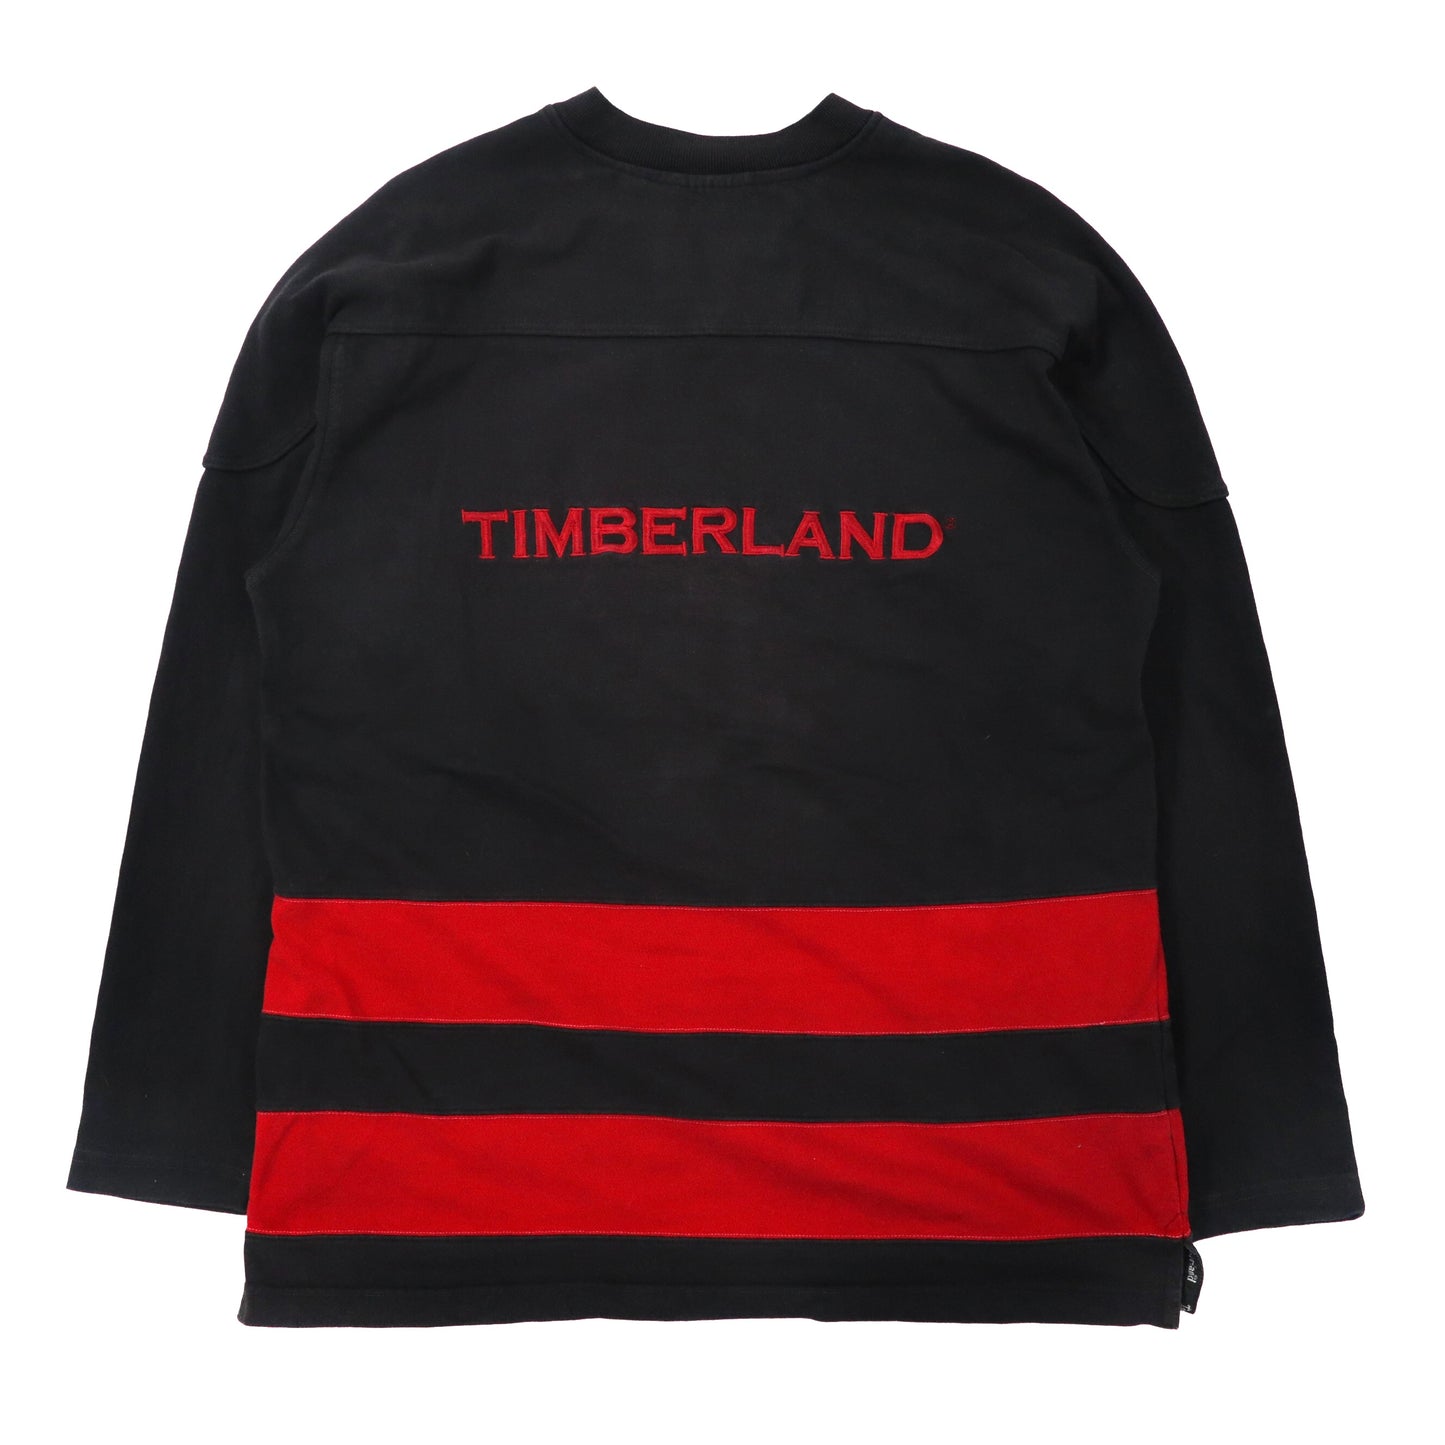 Timberland ビッグサイズ レースアップスウェット M ブラック ロゴ刺繍 90年代